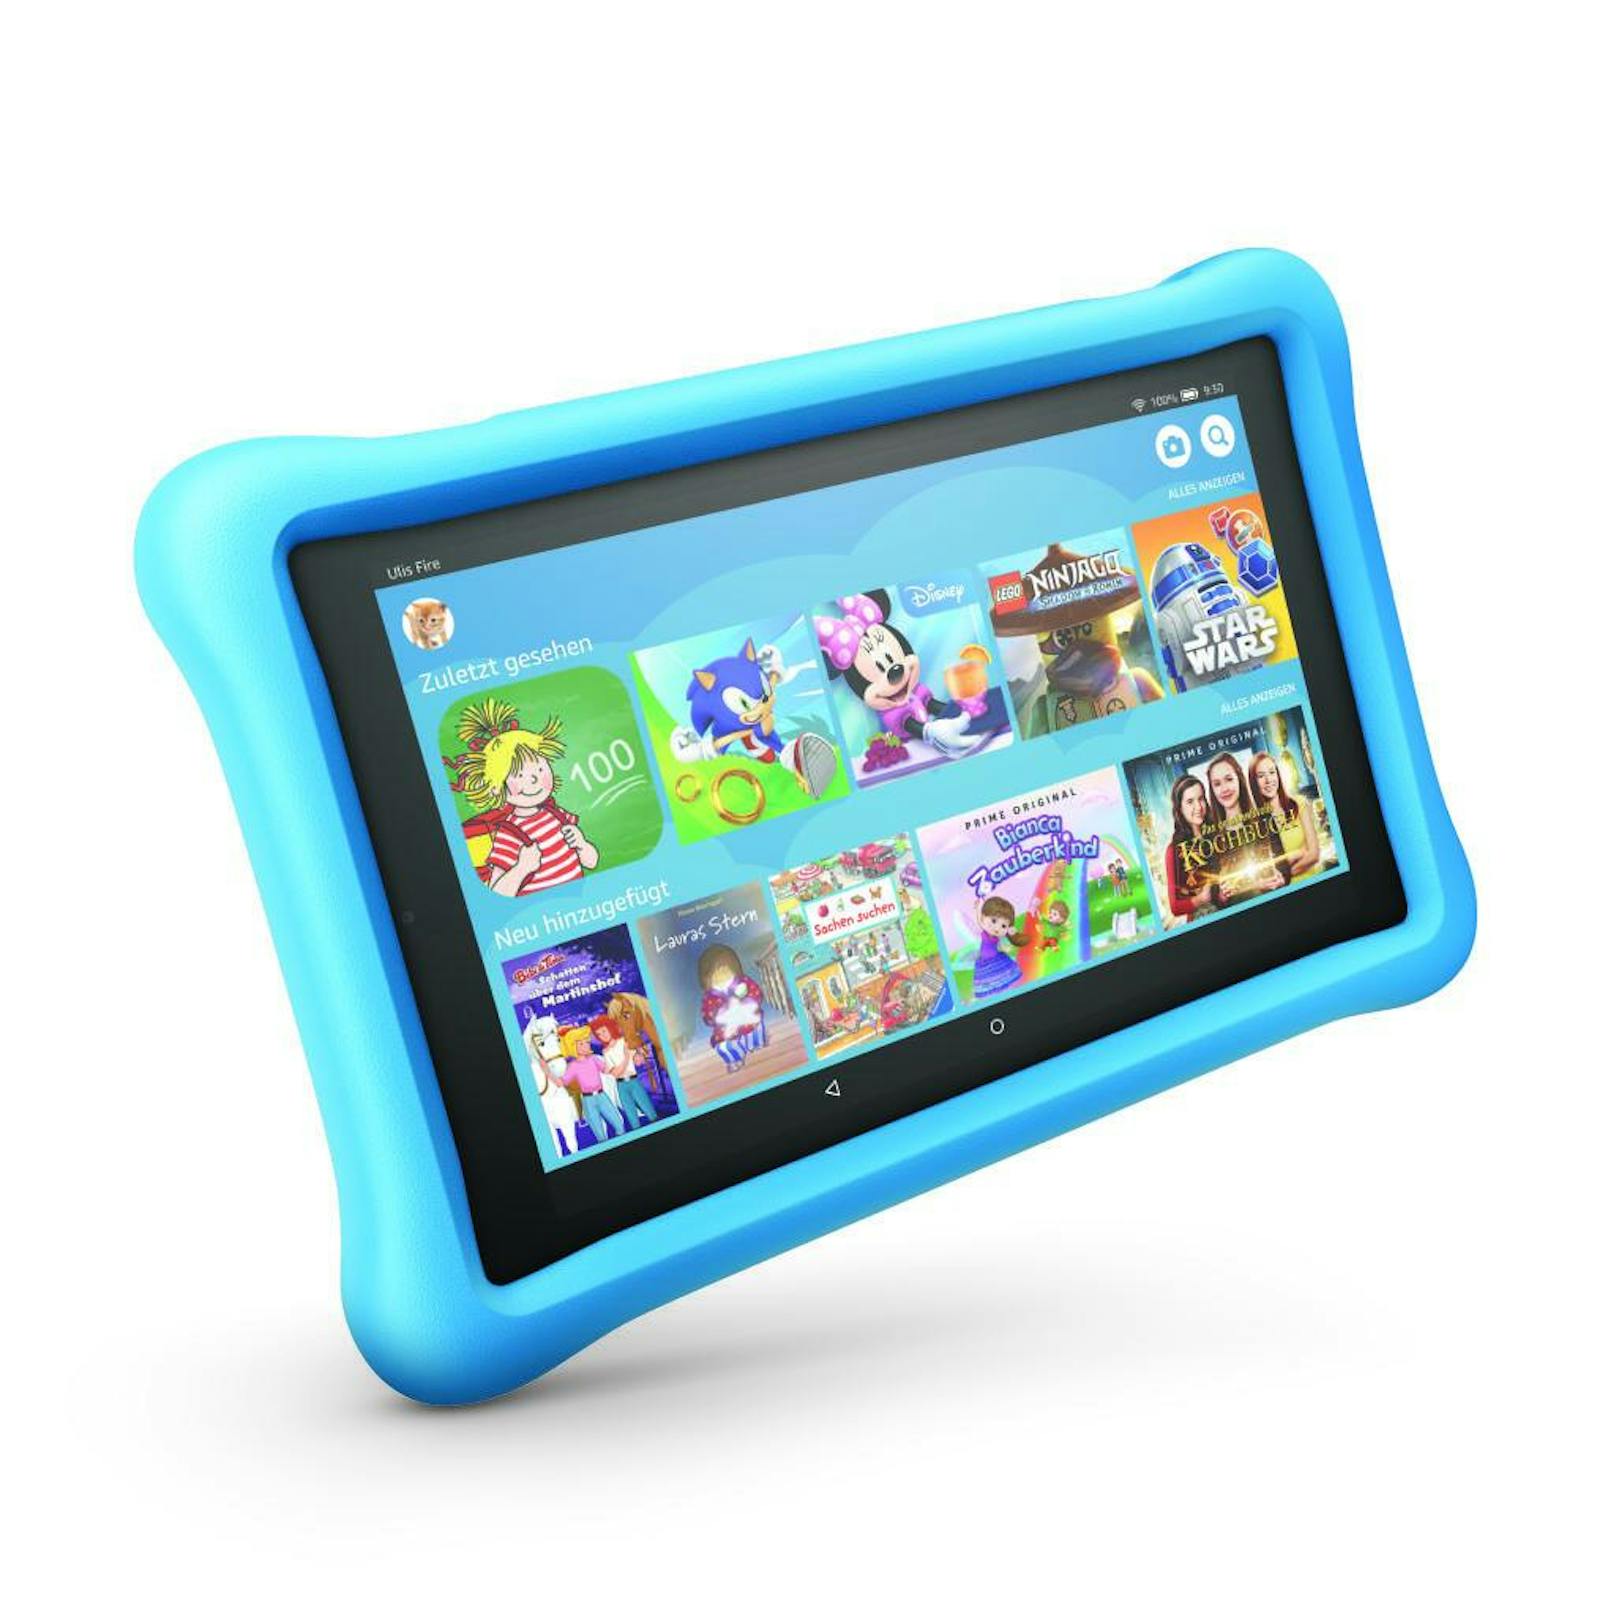 <b>08. September 2018:</b> Amazon stellt neue Fire HD 8 Kids Edition vor. Die Fire HD 8 Kids Edition basiert auf einem Fire HD 8 Tablet mit beeindruckendem 8-Zoll-HD-Bildschirm, 32 GB internem Speicher, bis zu zehn Stunden Akkuleistung sowie einem Jahr Mitgliedschaft bei Amazon FreeTime Unlimited, kindertauglicher Schutzhülle und einer zweijährigen Rundum-Sorglos-Garantie - für nur 124,99 Euro (Gesamtwert der Einzelpreise von über 265 Euro).